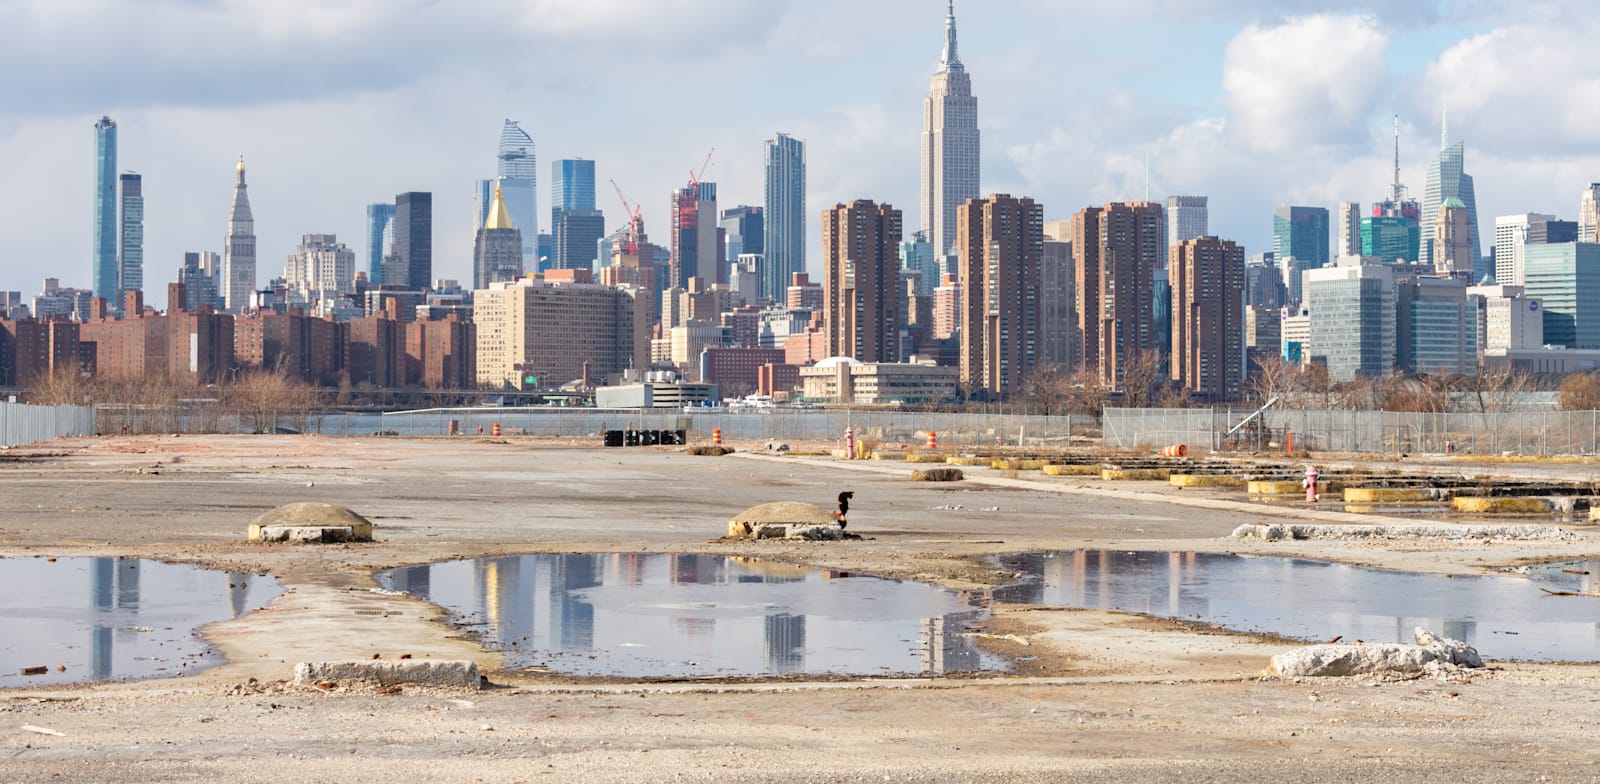 שטח ריק בניו יורק. יזמים, שנבהלים מהביורוקרטיה מתקשים יותר ויותר למצוא אתרים לבנות בהם / צילום: Shutterstock